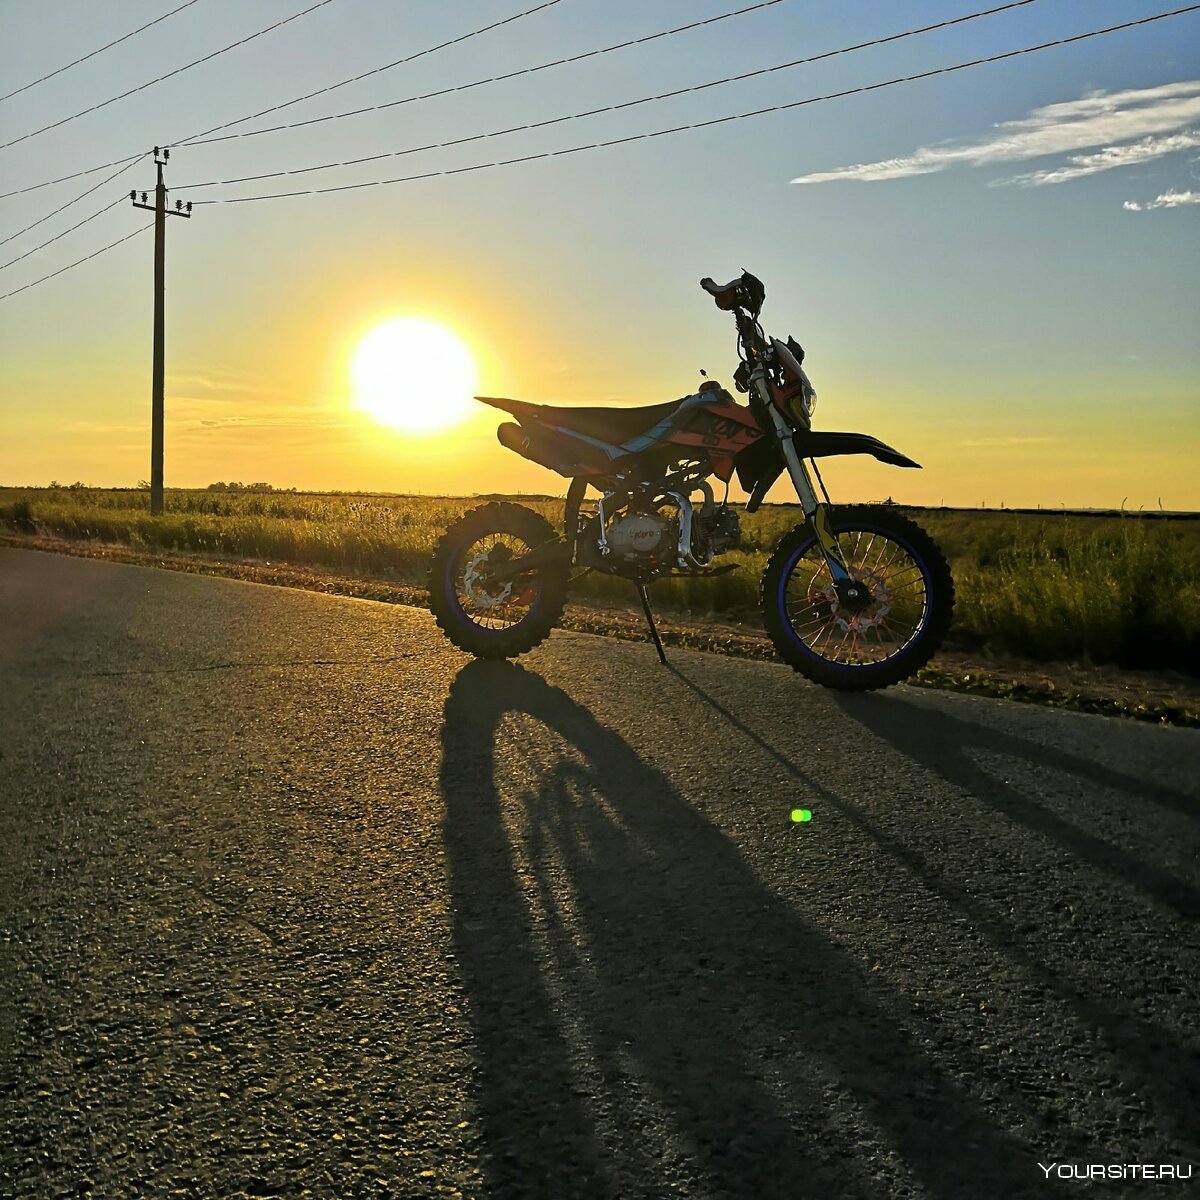 фото мотоцикла в поле